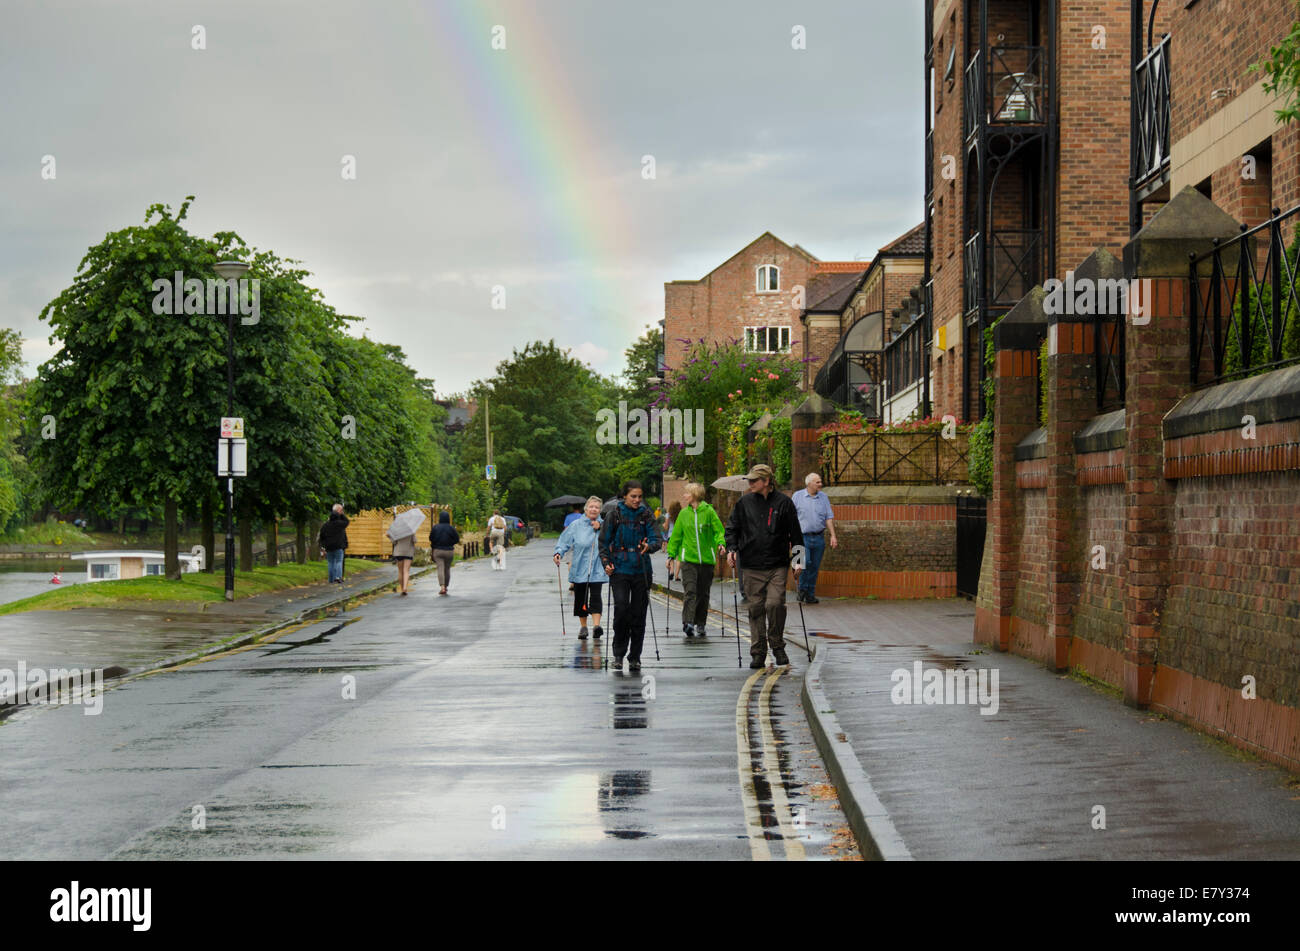 Arco iris en gris alto cielo nublado repentino después de aguaceros de lluvia empapó húmedo y la gente caminando en Riverside Road, York, North Yorkshire, Inglaterra, Reino Unido Foto de stock